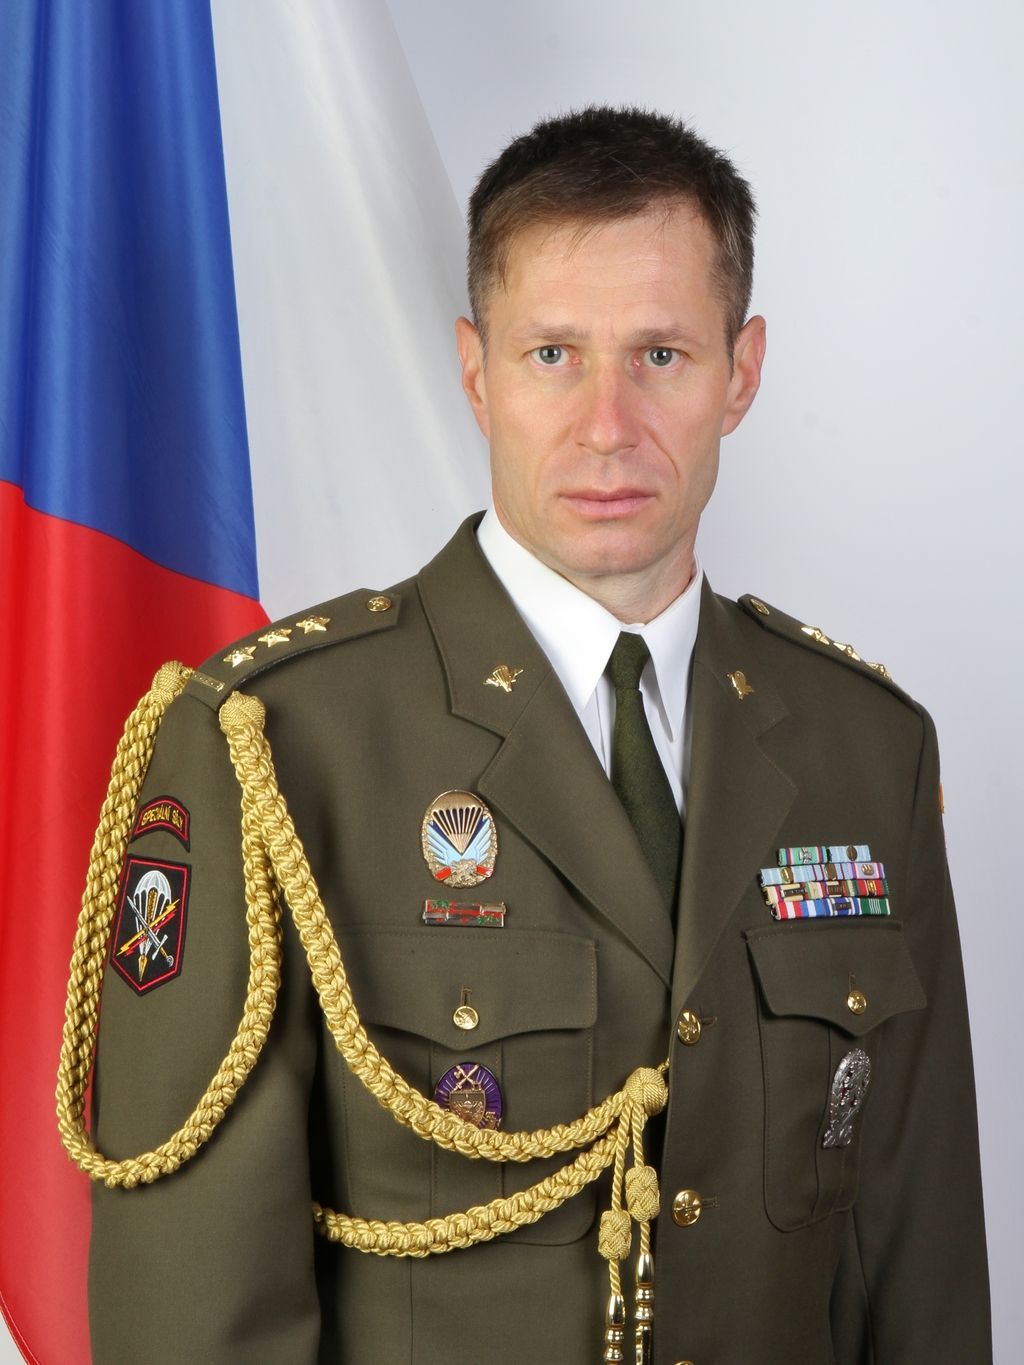 Velitel Ředitelství speciálních sil Miroslav Hofírek.